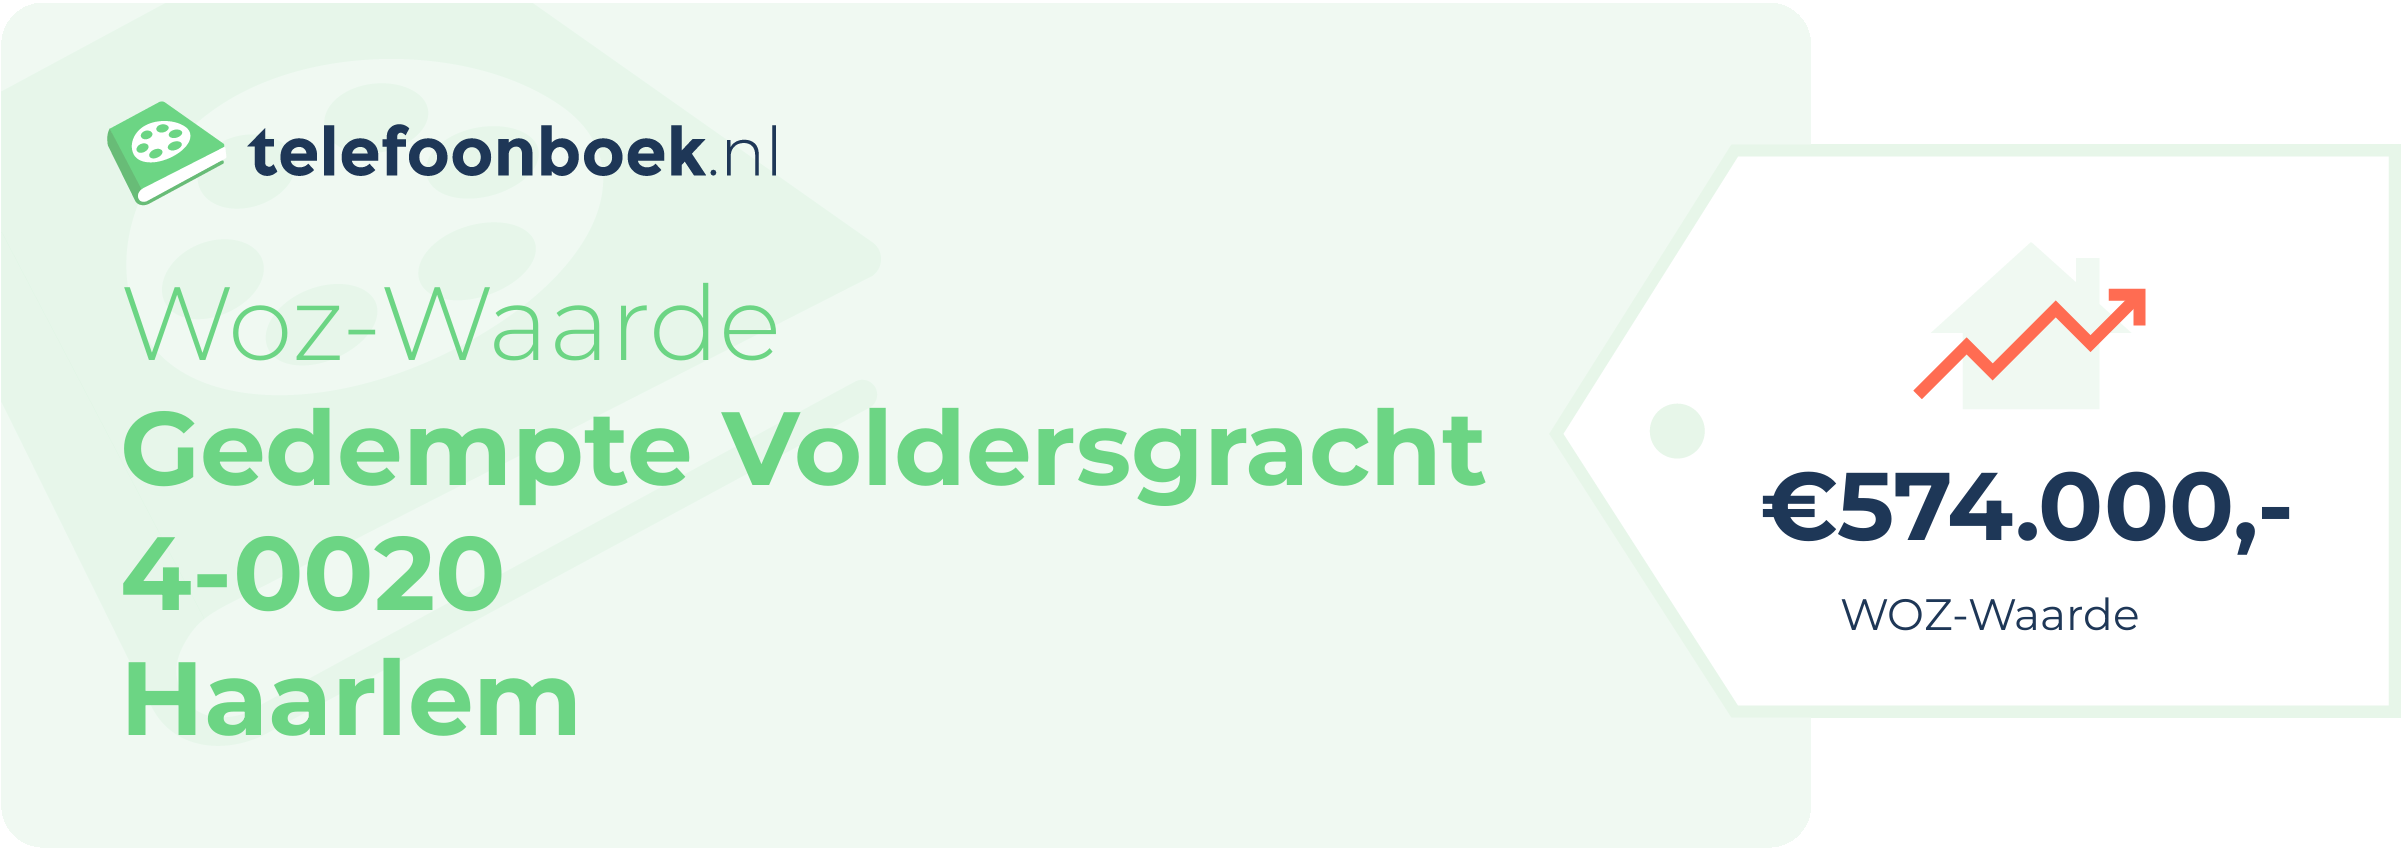 WOZ-waarde Gedempte Voldersgracht 4-0020 Haarlem